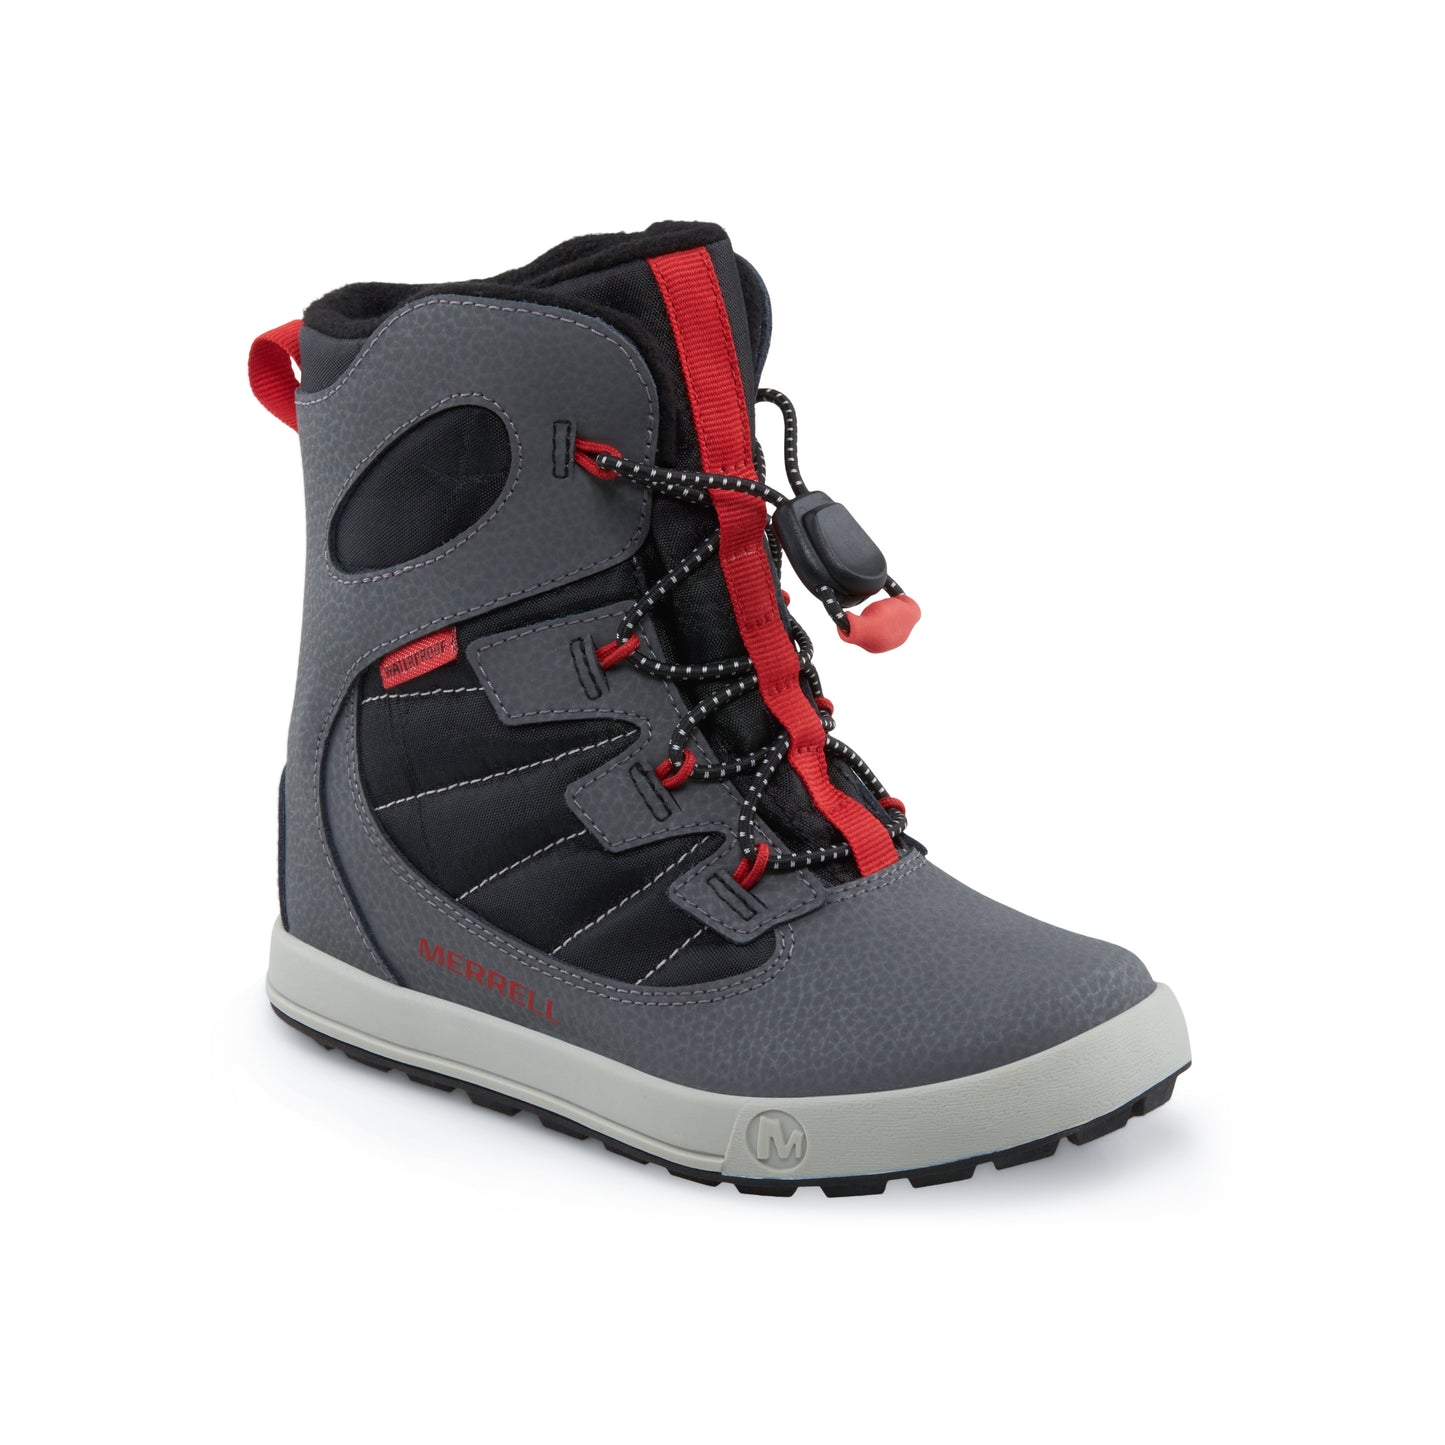 snow-bank-40-waterproof-boot-bigkid-grey-black-red__Grey/Black/Red_1